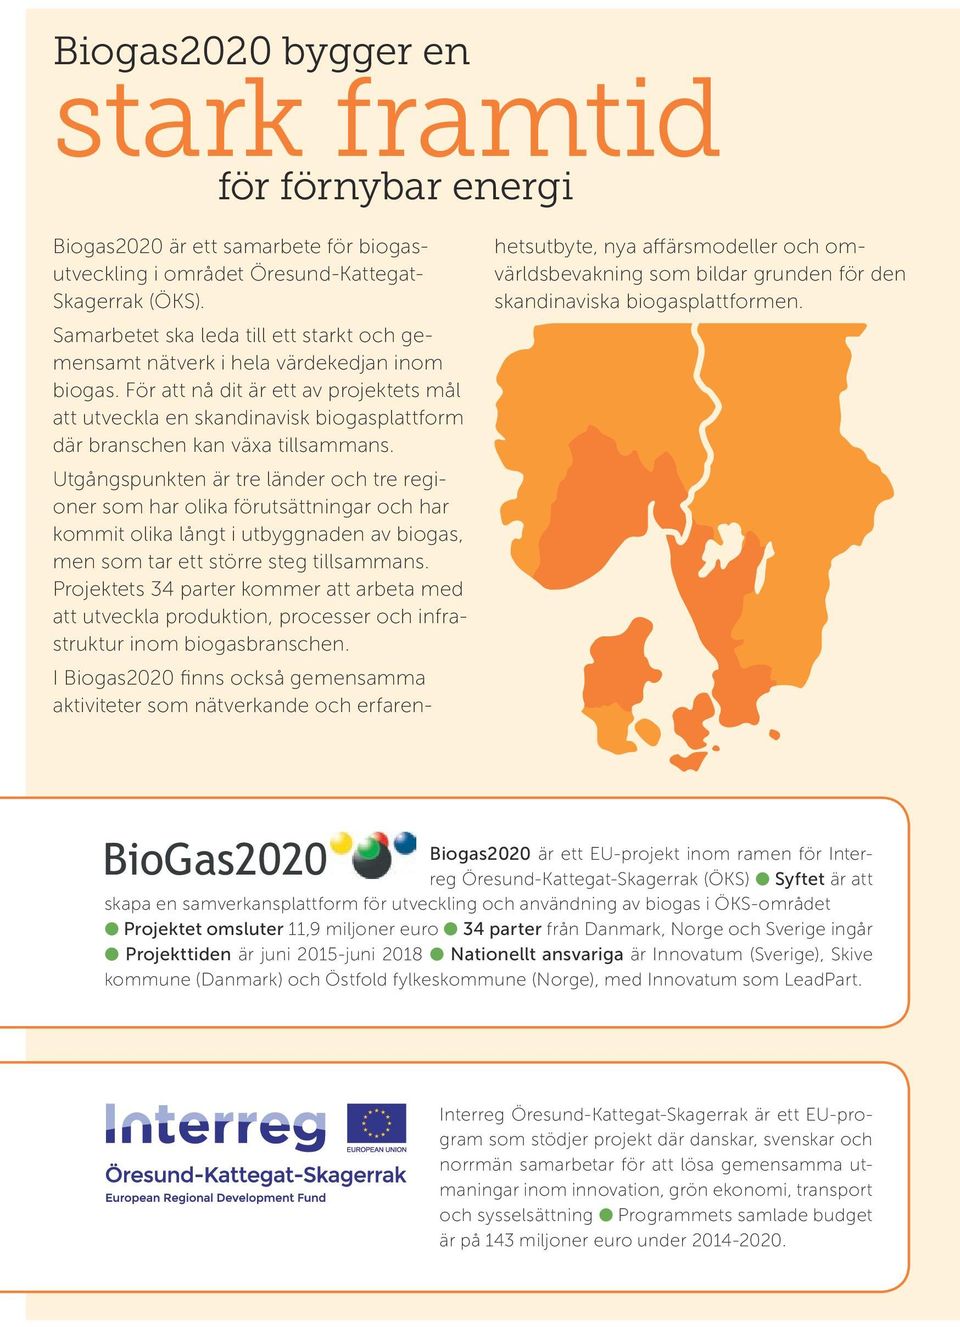 För att nå dit är ett av projektets mål att utveckla en skandinavisk biogasplattform där branschen kan växa tillsammans.